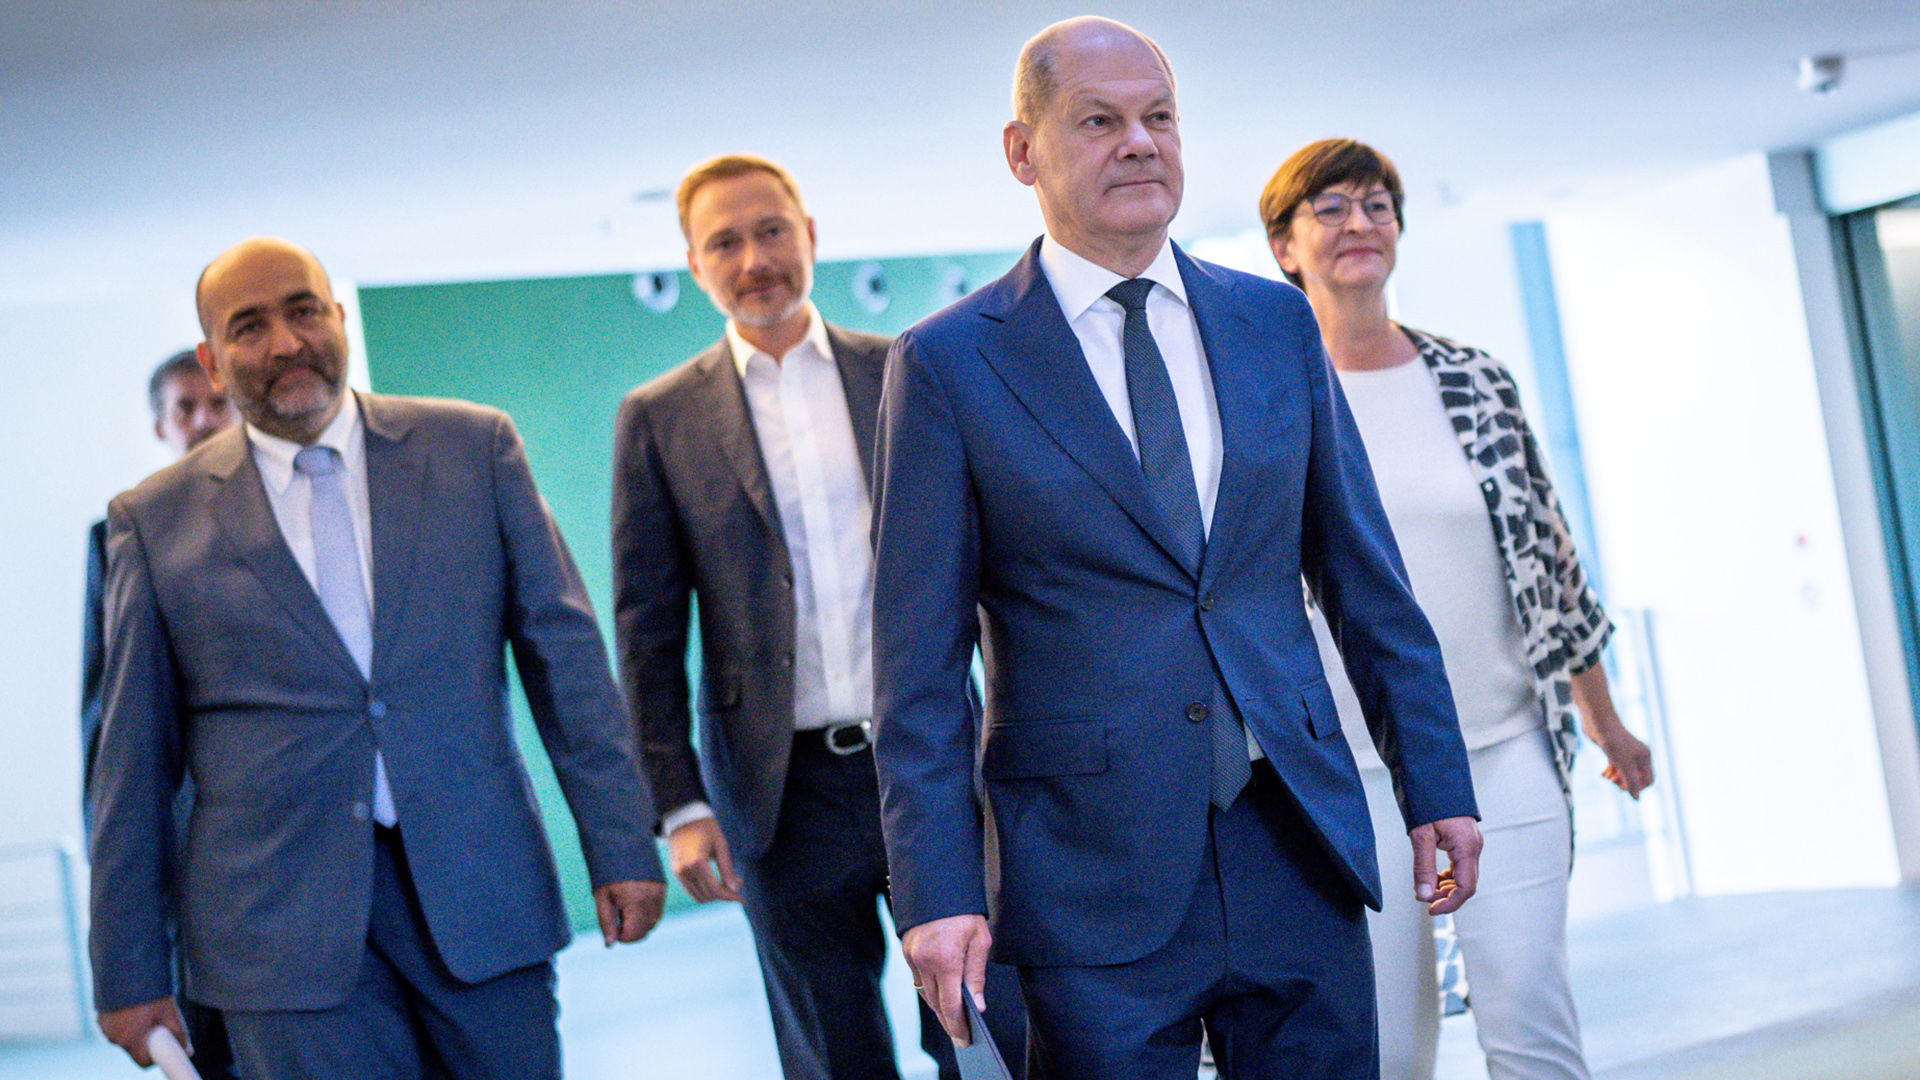 Olaf Scholz (2.v.r.), kommt neben Omid Nouripour (l), Saskia Esken (r) sowie Christian Lindner zur Pressekonferenz nach den Beratungen von SPD, Grünen und FDP im Koalitionsausschuss. | dpa